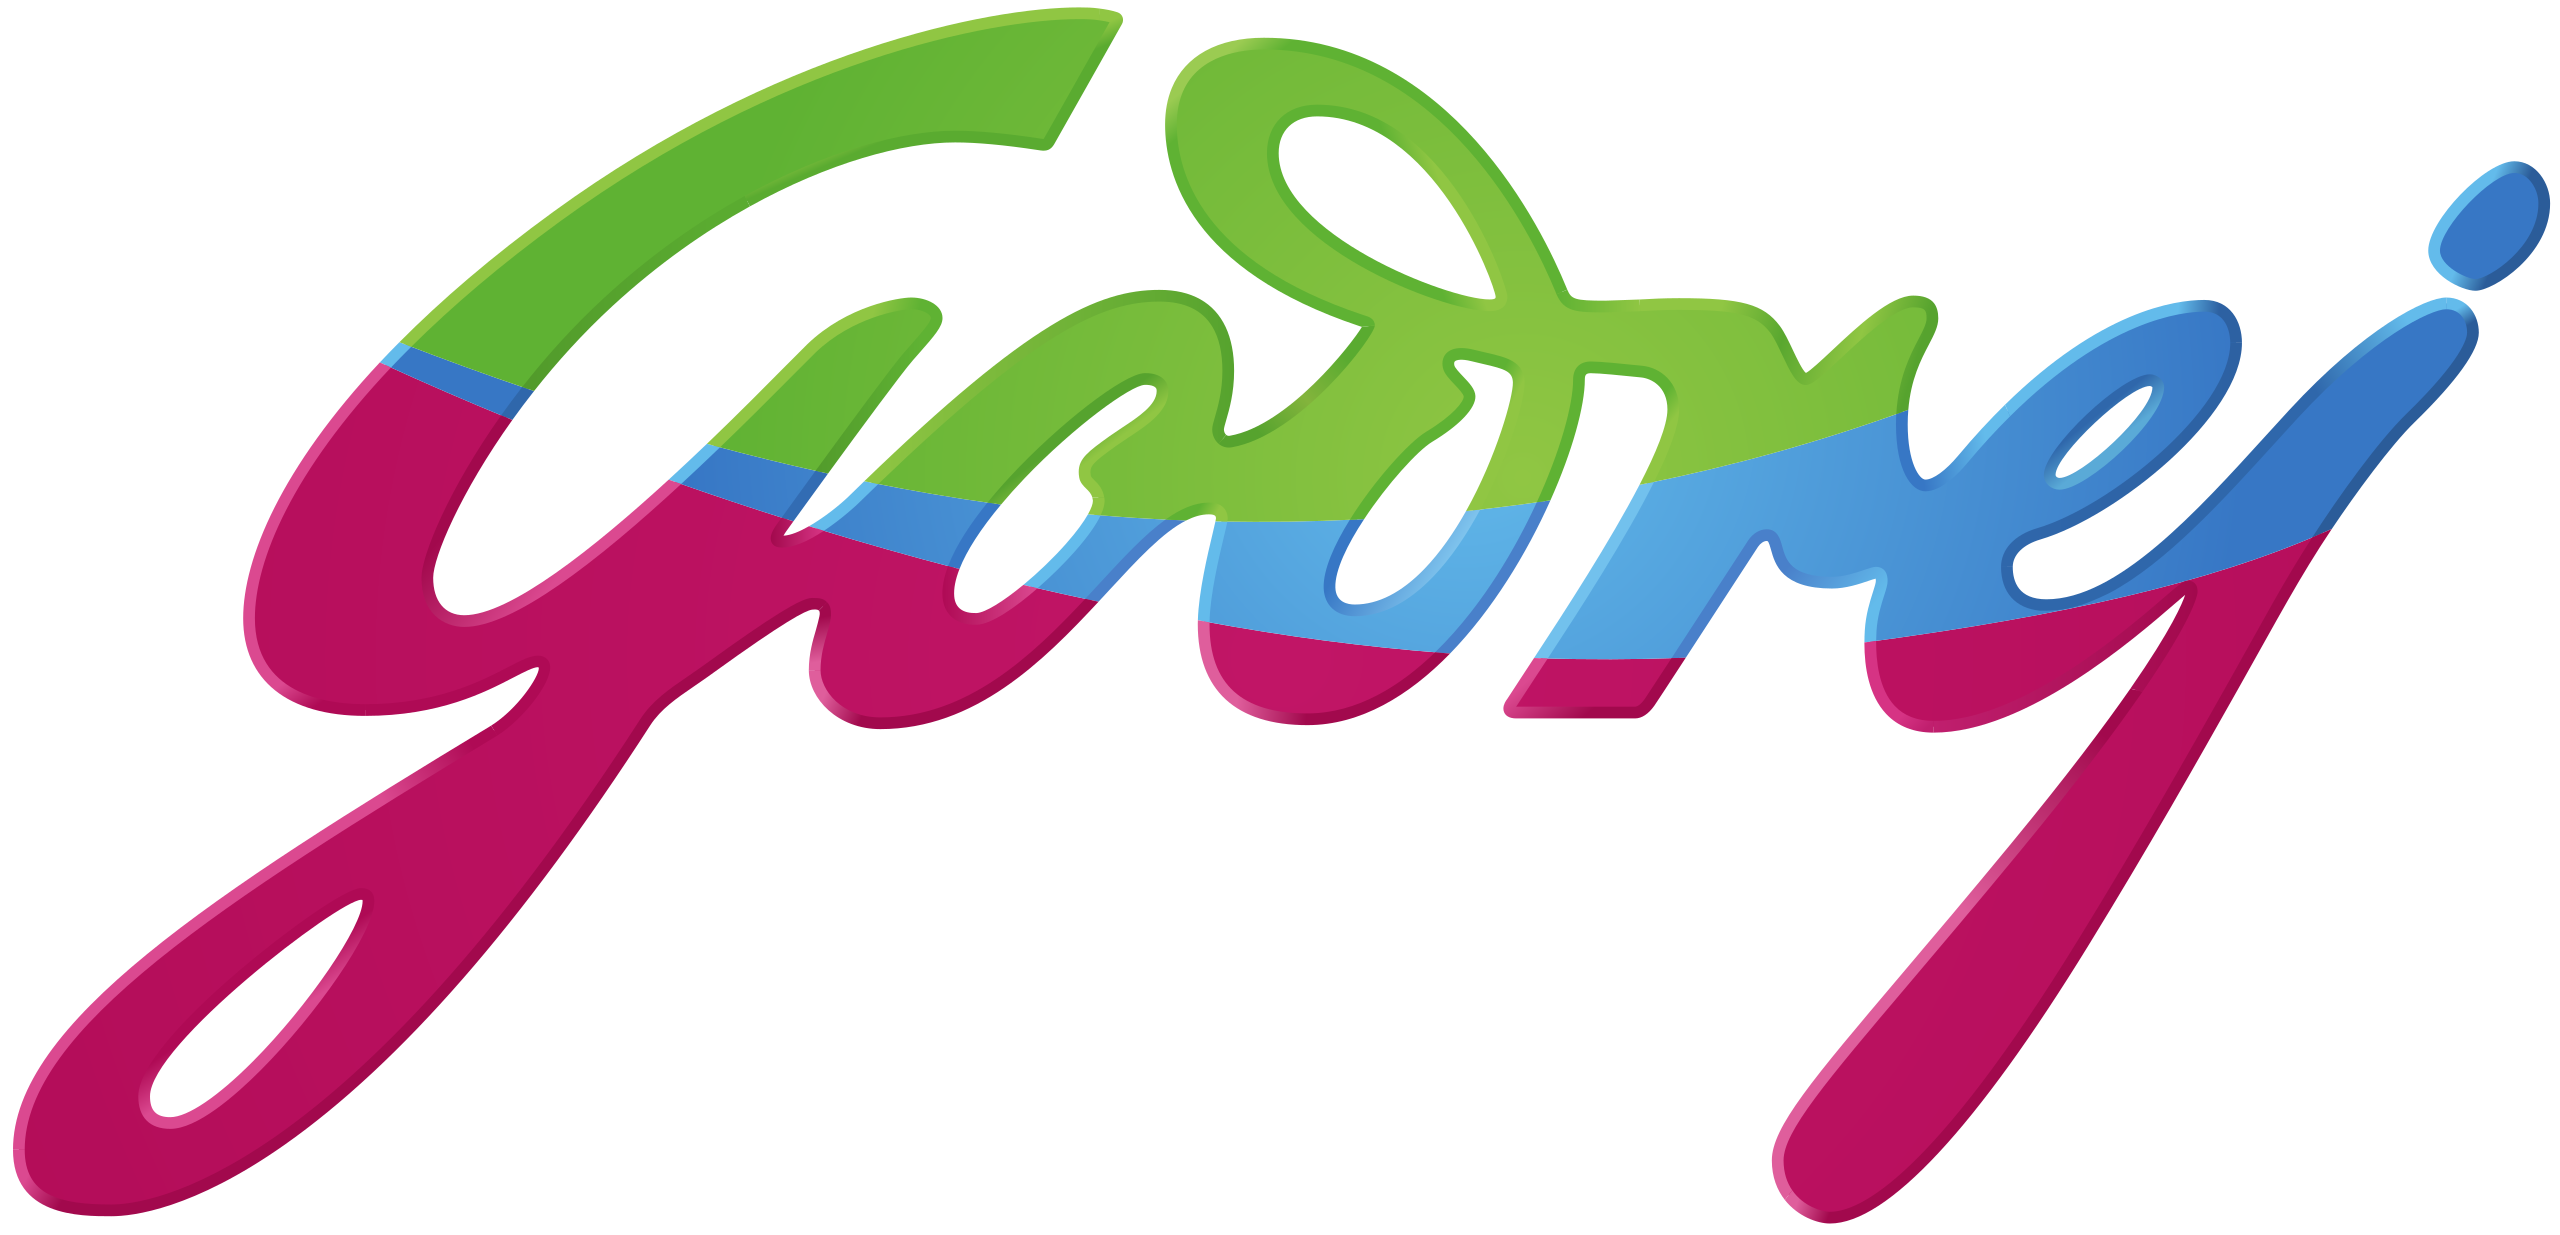 Godrej logo